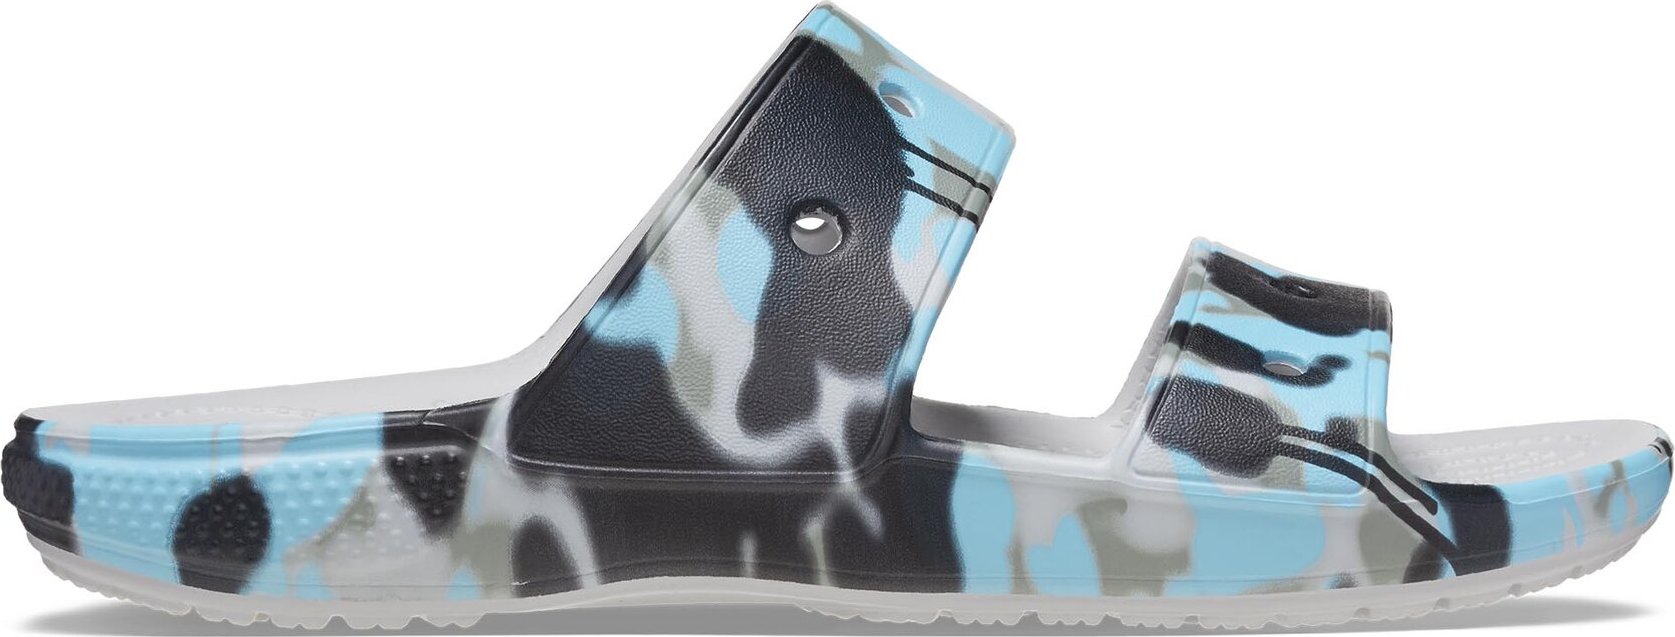 Nazouváky Crocs Classic Spray Camo Sandal 208253 1FT